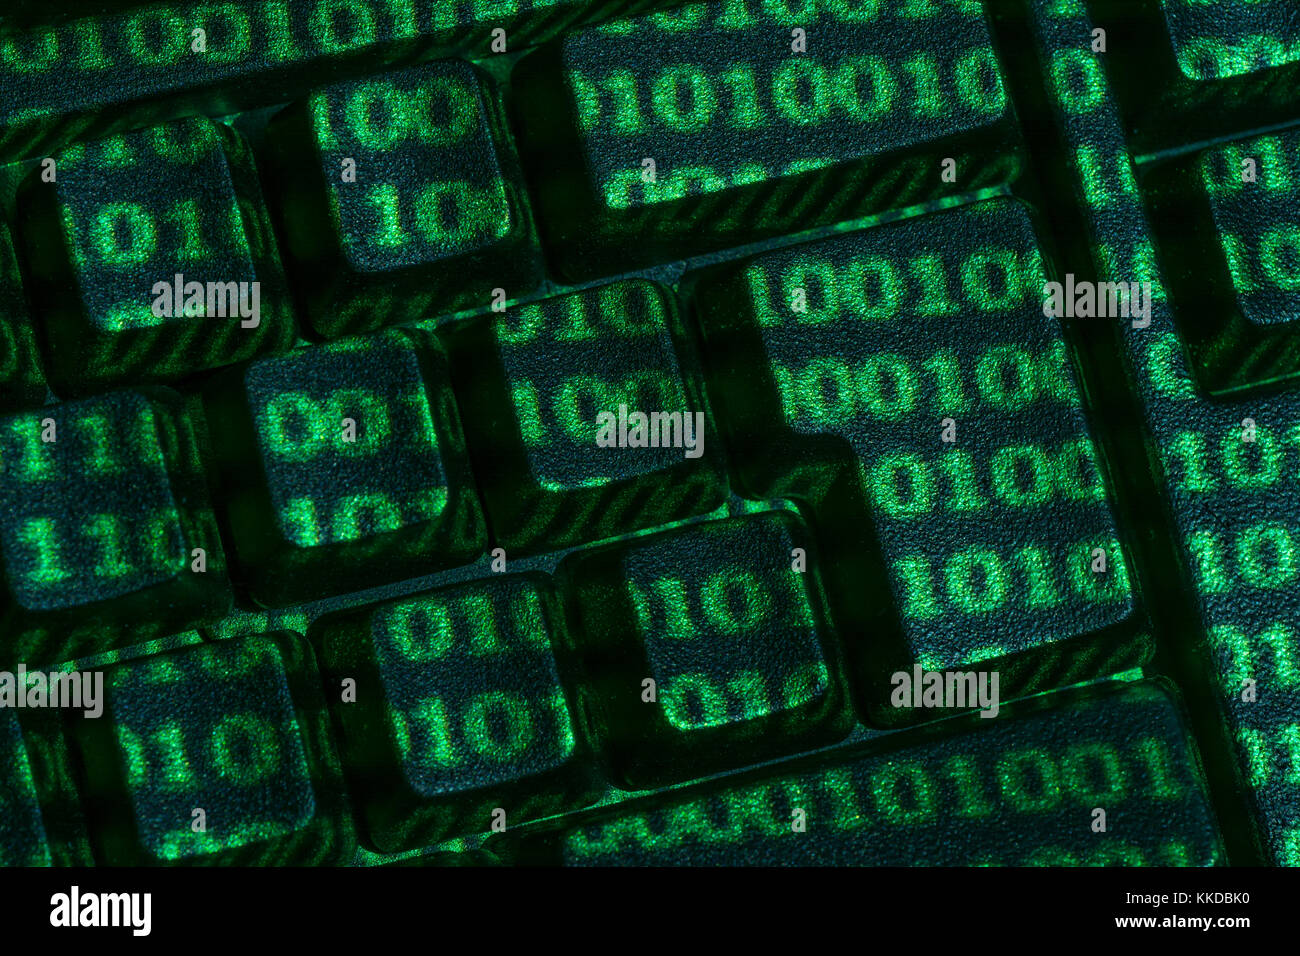 Schwarze QWERTY-Tastatur + grüne Oberfläche von Binary 0 und 1 projiziert. Für Cyberkriminalität, Darkweb, Datenverschlüsselung, World Password Day, Cyber-Bedrohung, Hacking. Stockfoto